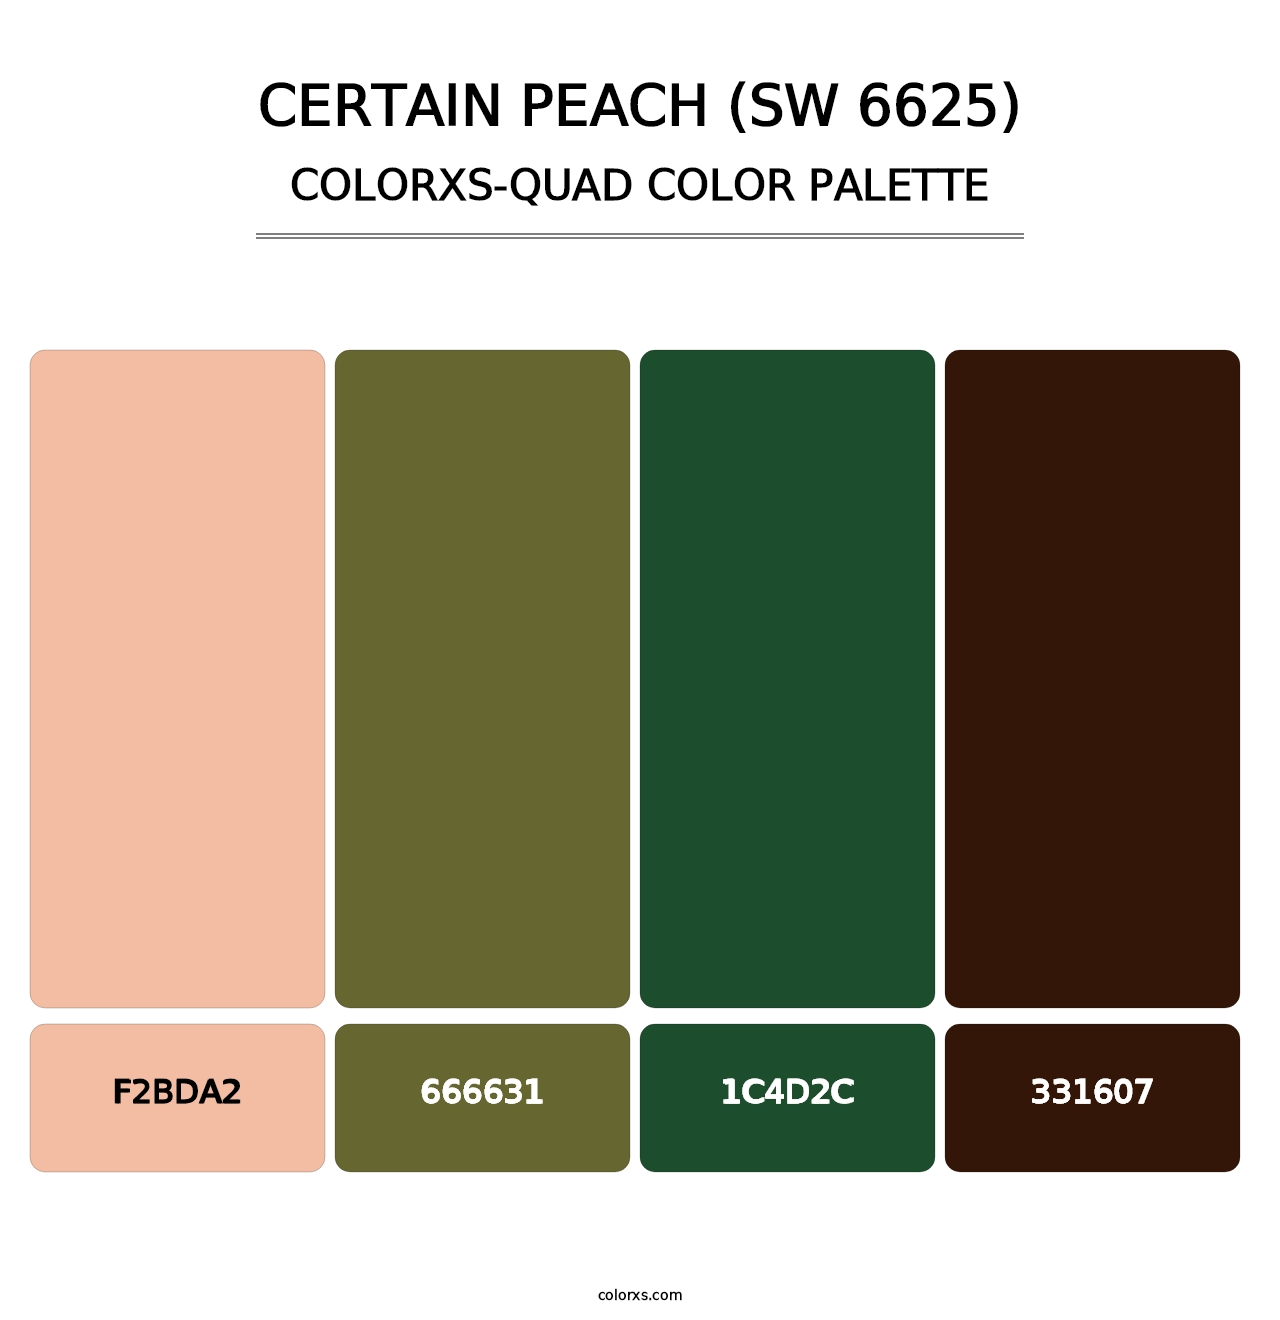 Certain Peach (SW 6625) - Colorxs Quad Palette